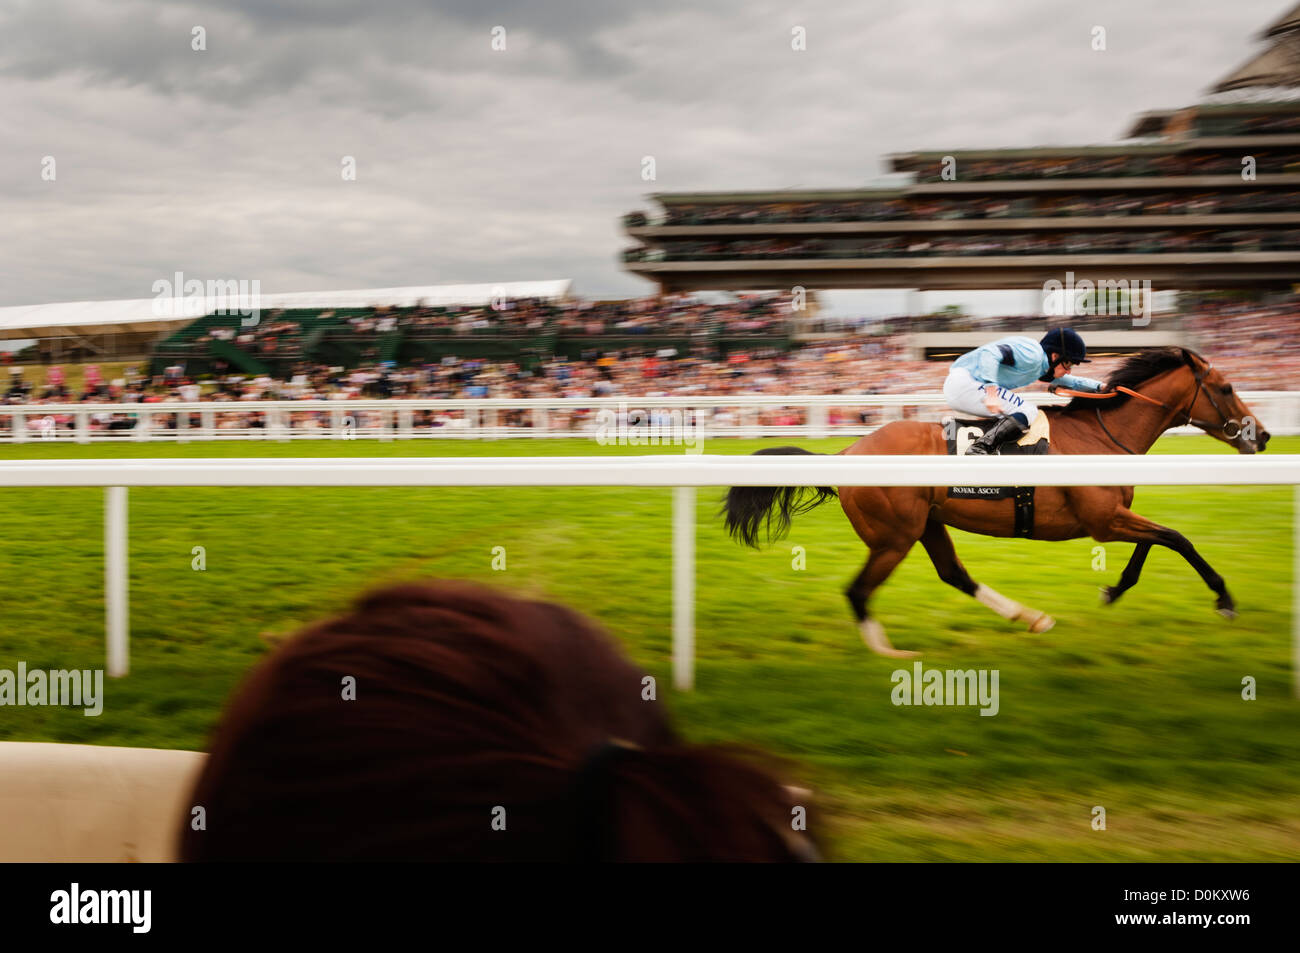 Horseracing at Royal Ascot. Stock Photo